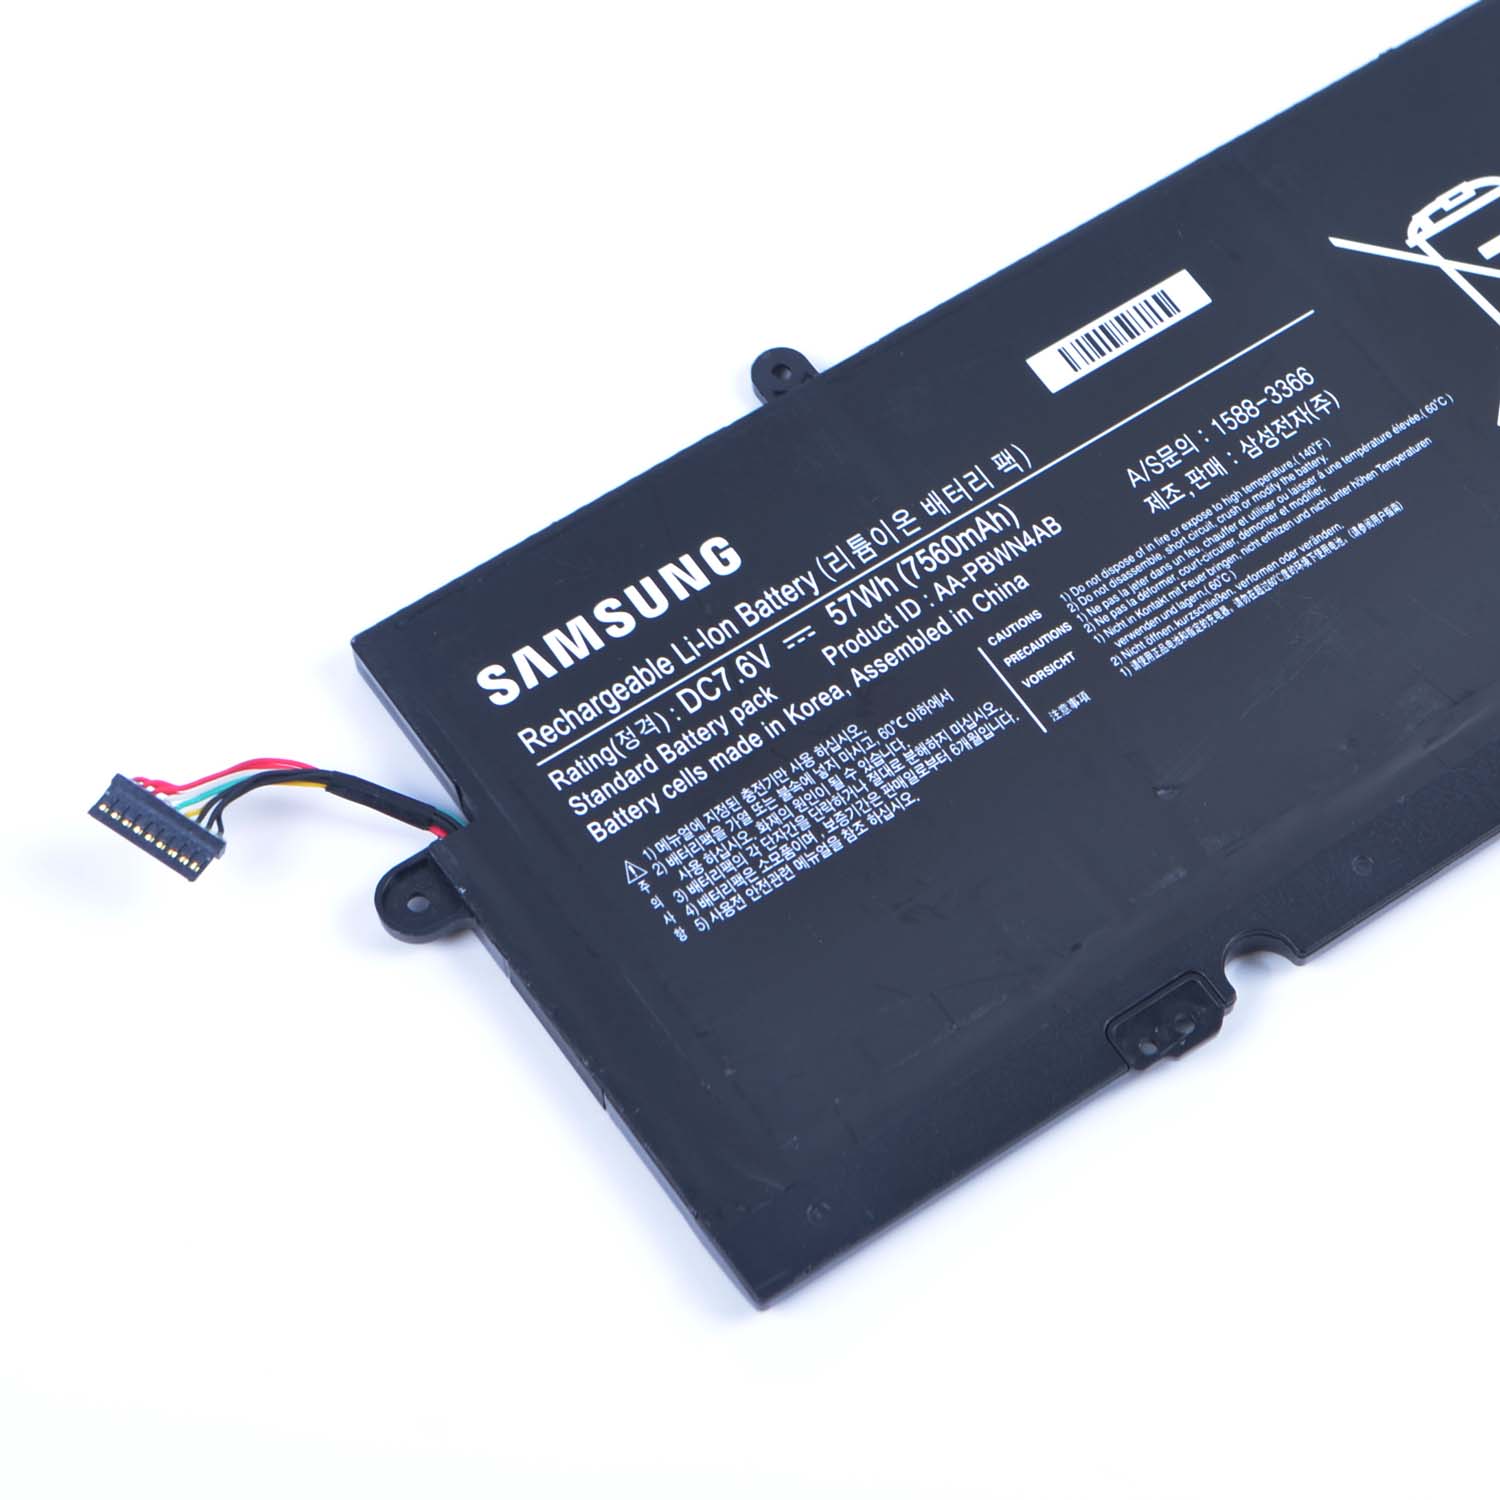 Samsung 740U3E-S01 batería